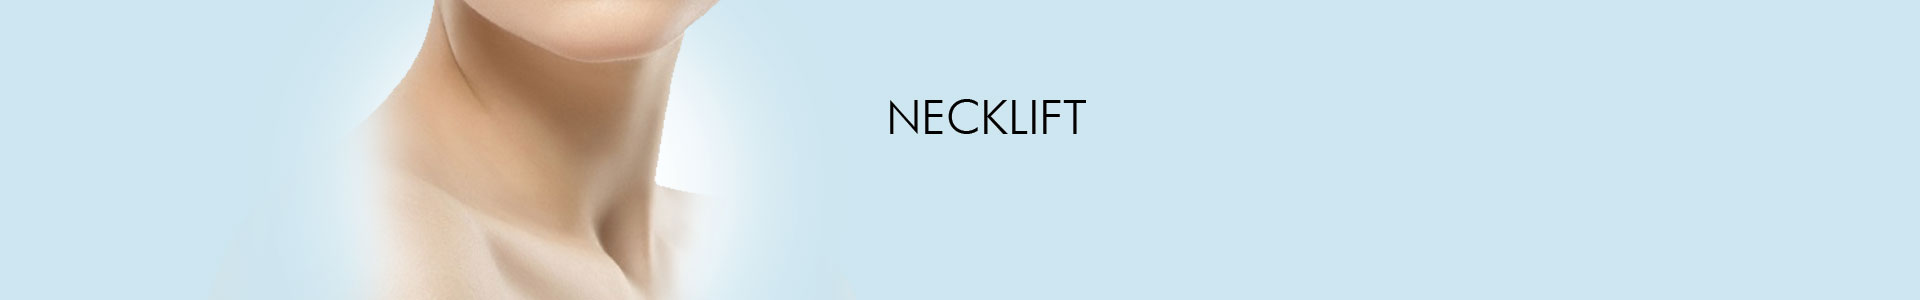 Neck Lift